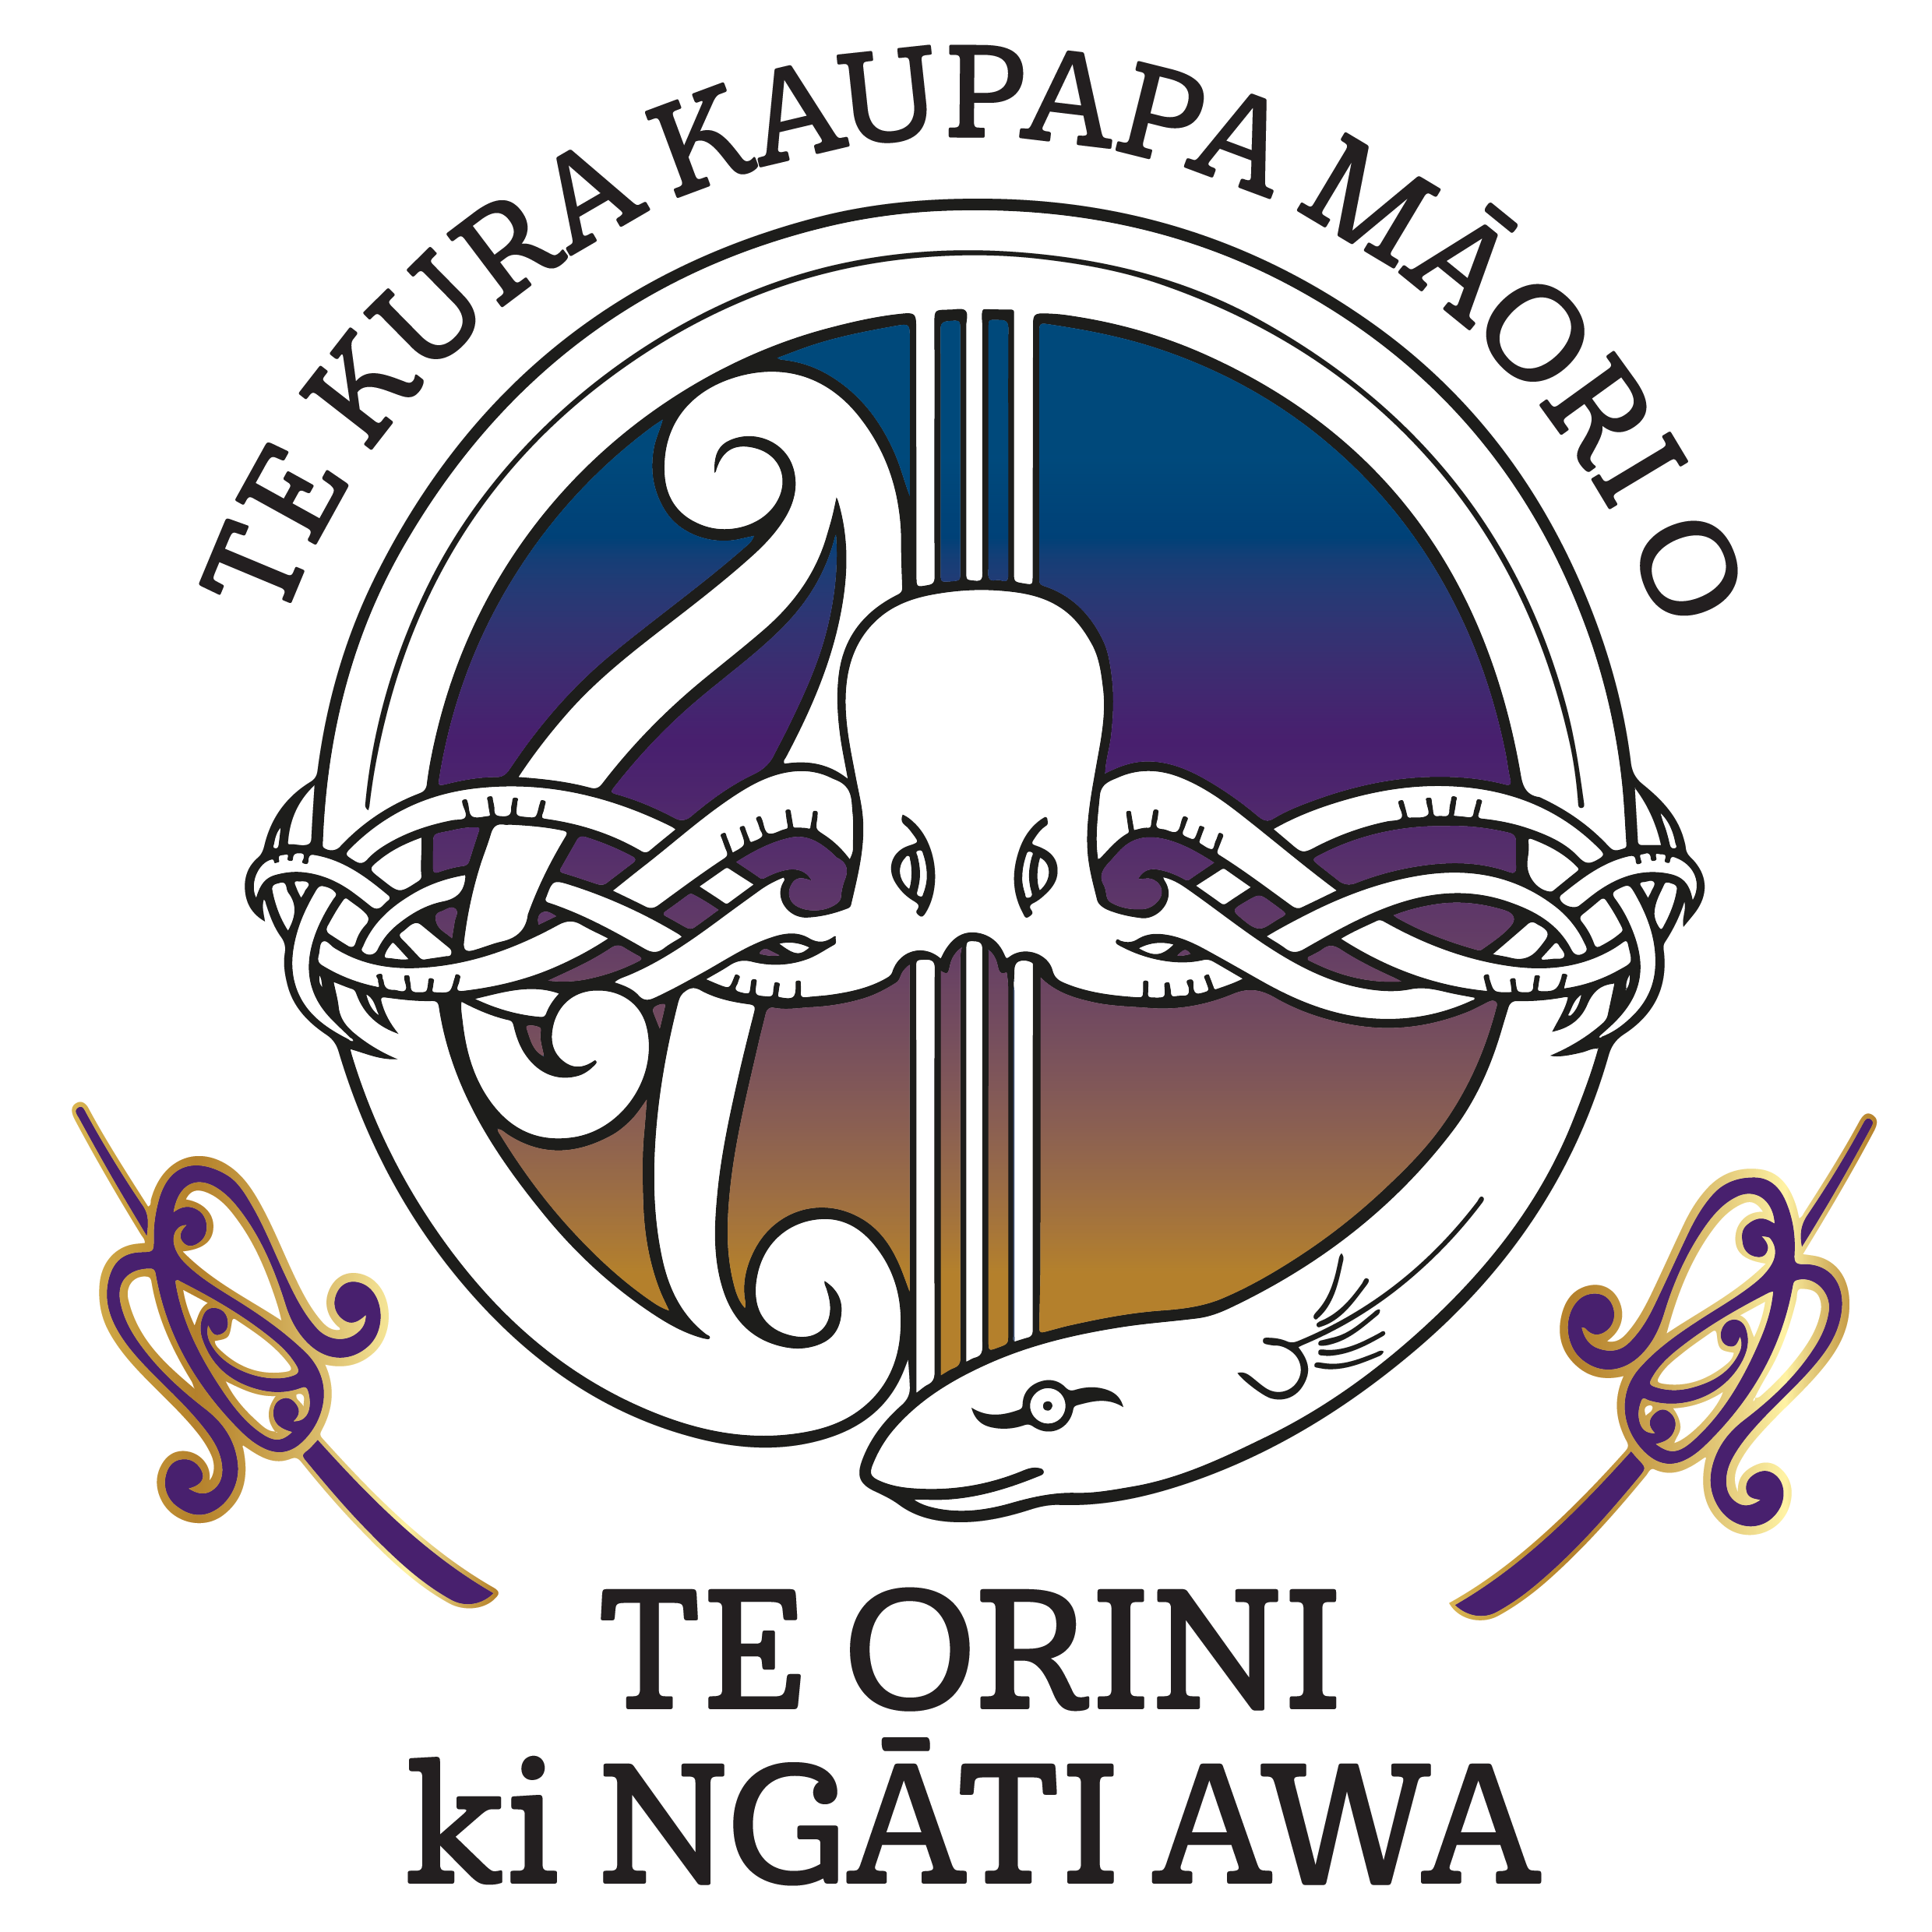 Te Kura Kaupapa Maori o Te Orini ki Ngati Awa